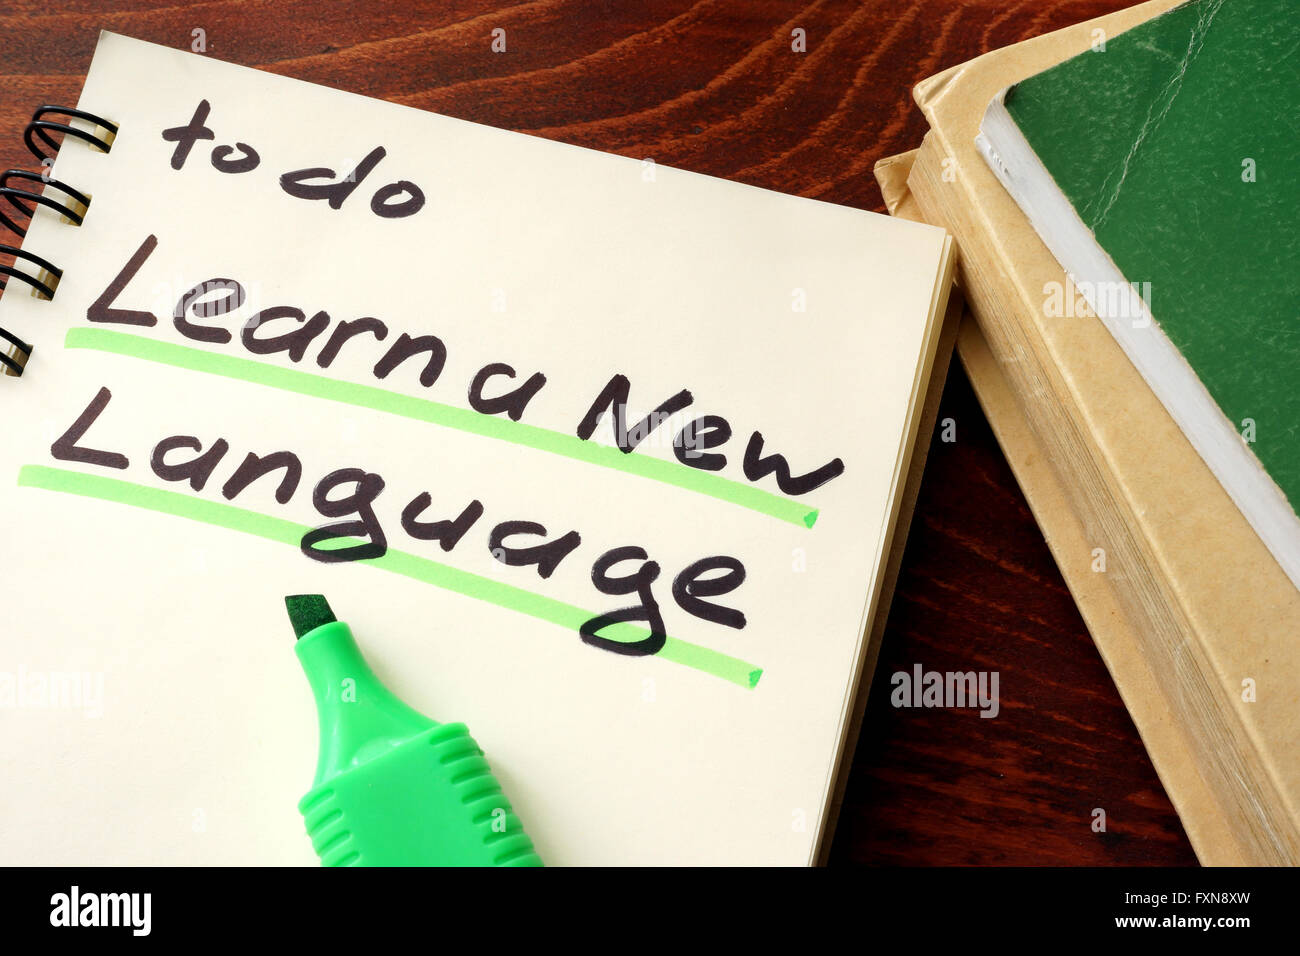 Apprendre une nouvelle langue écrit sur un bloc-notes. Concept de l'éducation. Banque D'Images